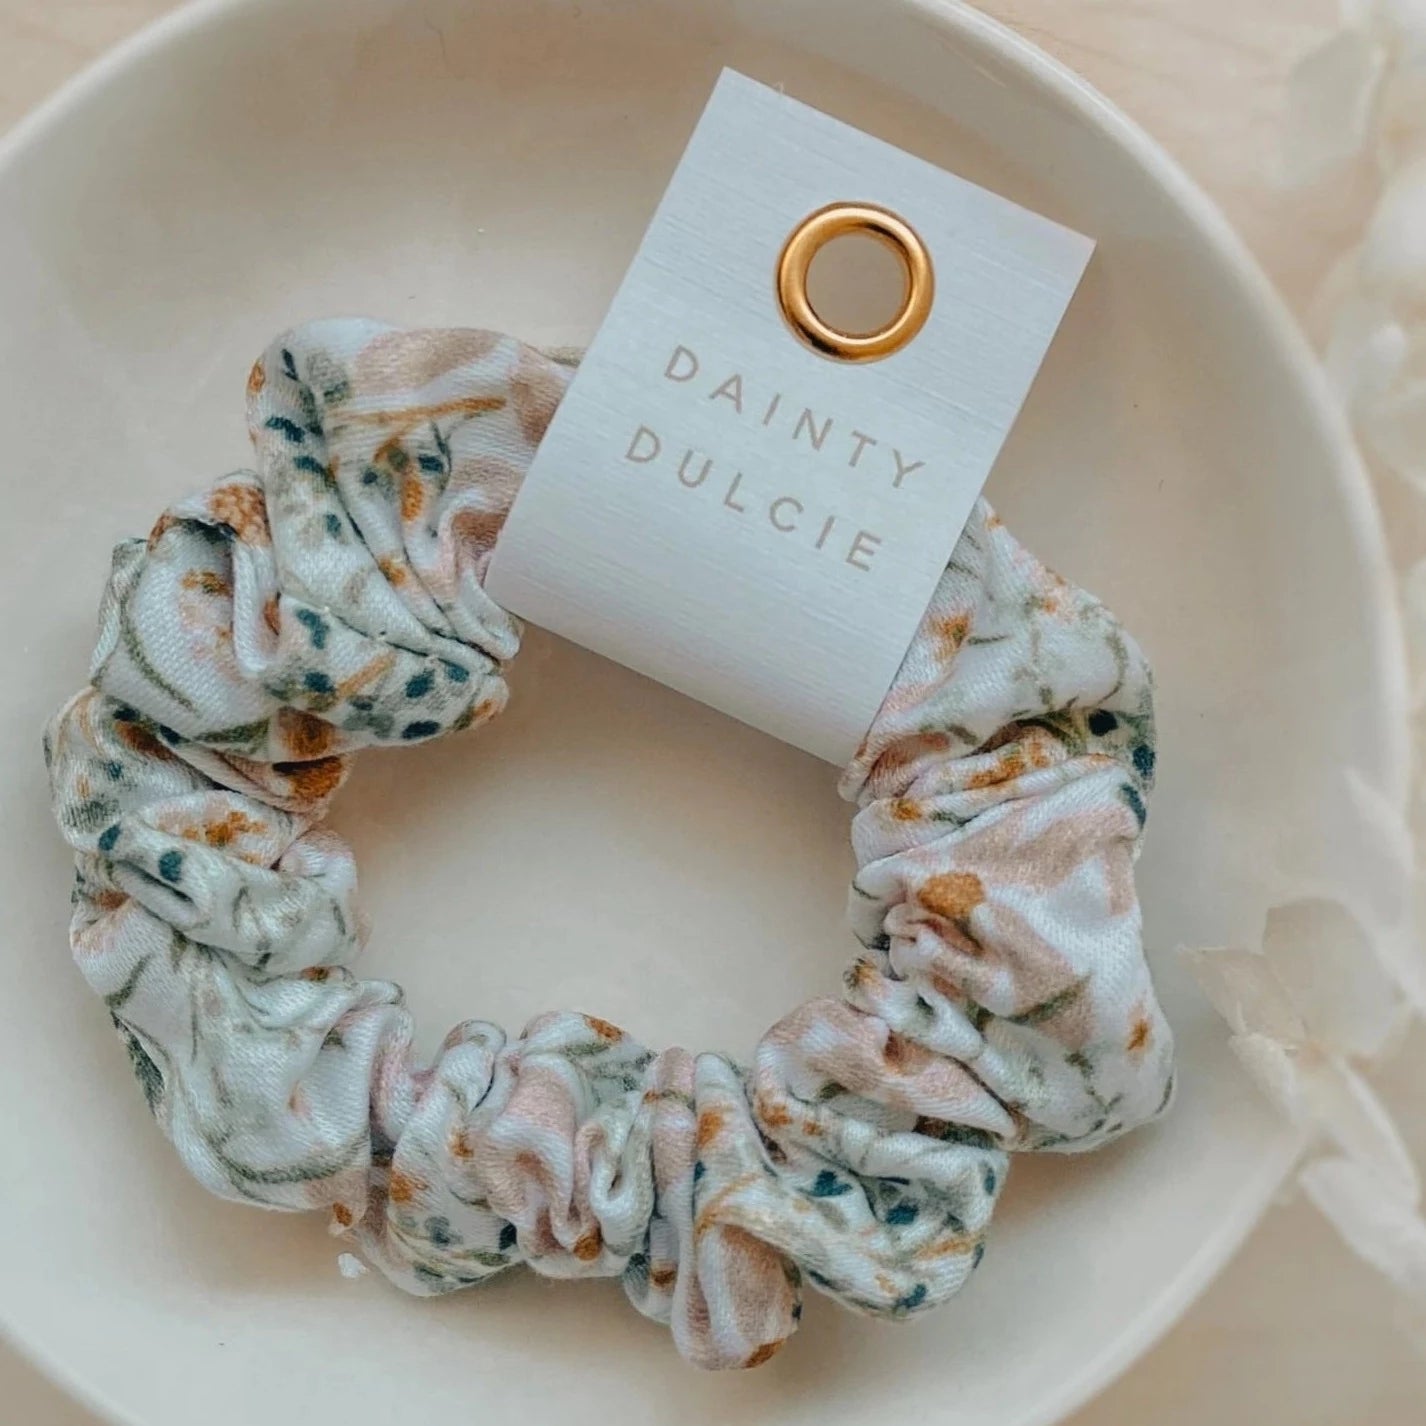 mini kids fabric scrunchie by Dainty Dulcie in  pastel floral meadow pattern